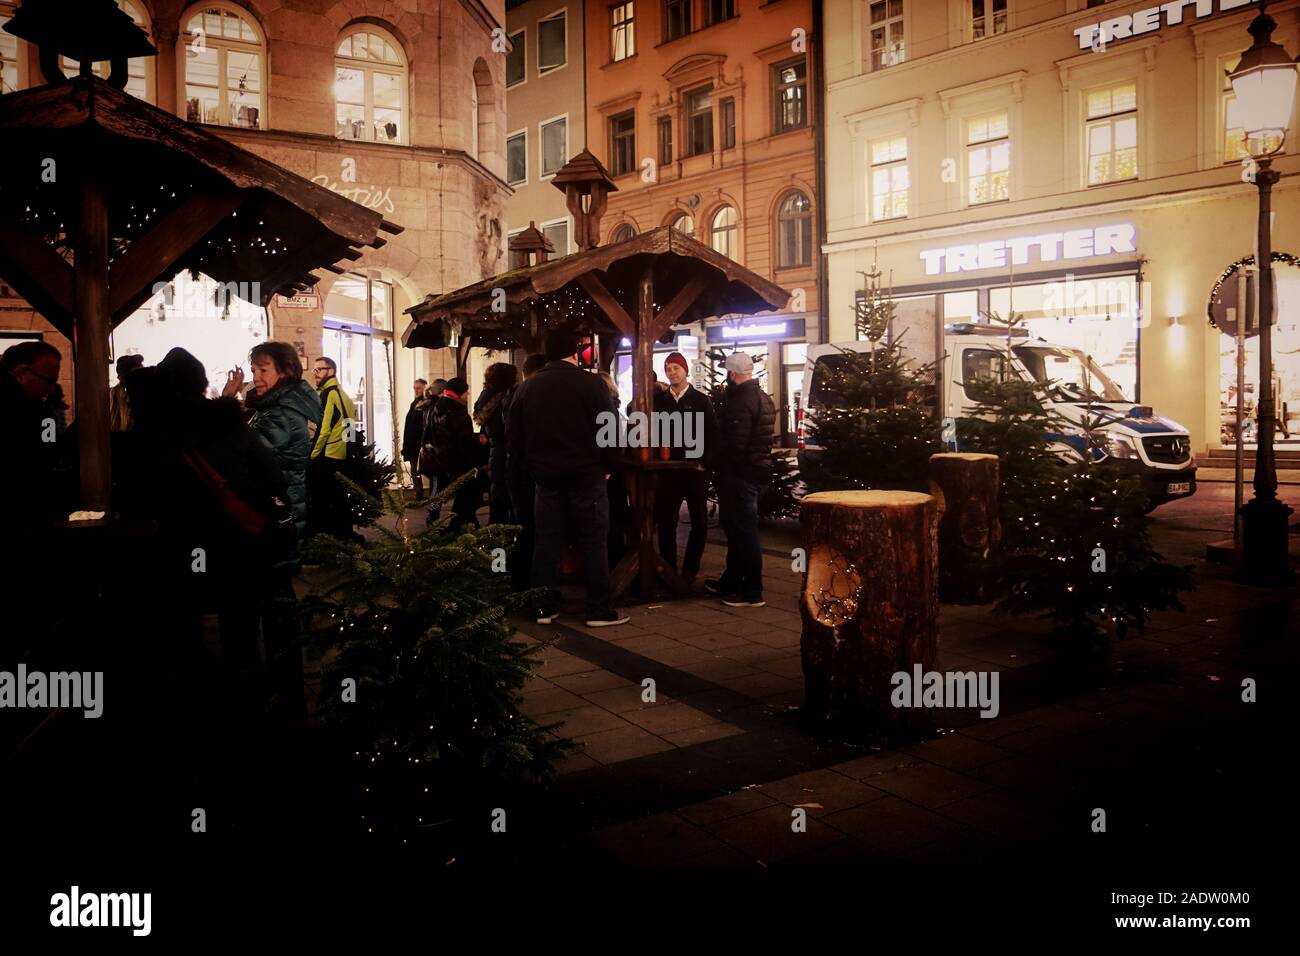 München, Deutschland - Dezember 3, 2019 Weihnachtsmarkt am Sendlinger Straße, große touristische Attraktion und gemütlich einen Glühwein mit Freunden zu trinken Stockfoto